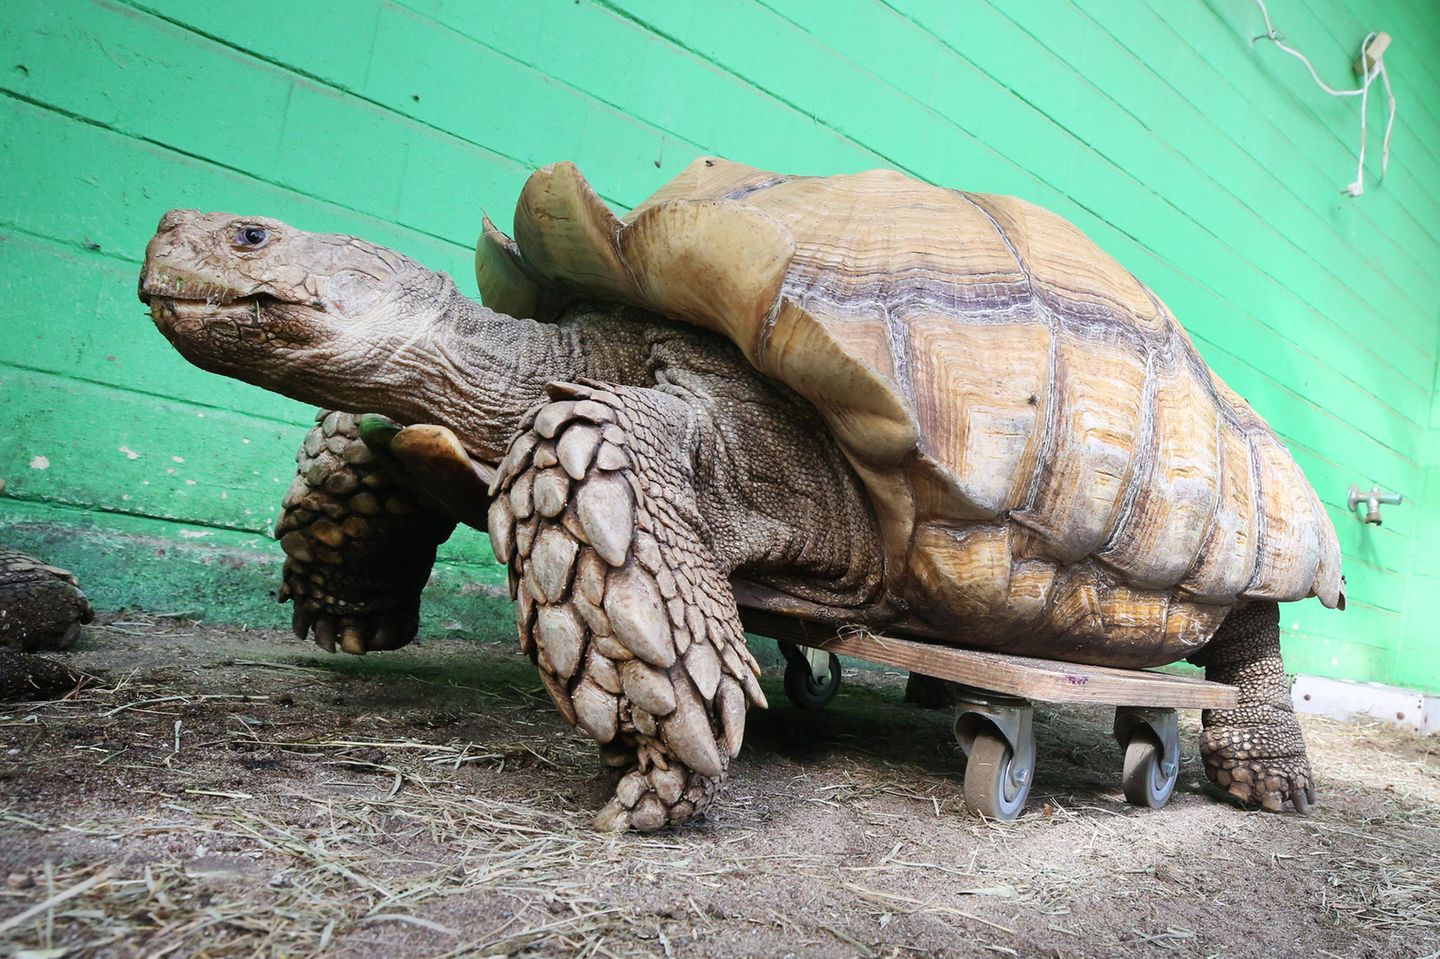 Das rund 100 Kilogramm schwere Schildkrötenmännchen Helmuth bewegt sich auf seinem Rollbrett durch das Gehege. Helmuth hat Probleme mit seiner Schulter, die ihm das Laufen schwer machen - durch das Rollbrett kann sich das schwere Tier wesentlich leichter bewegen